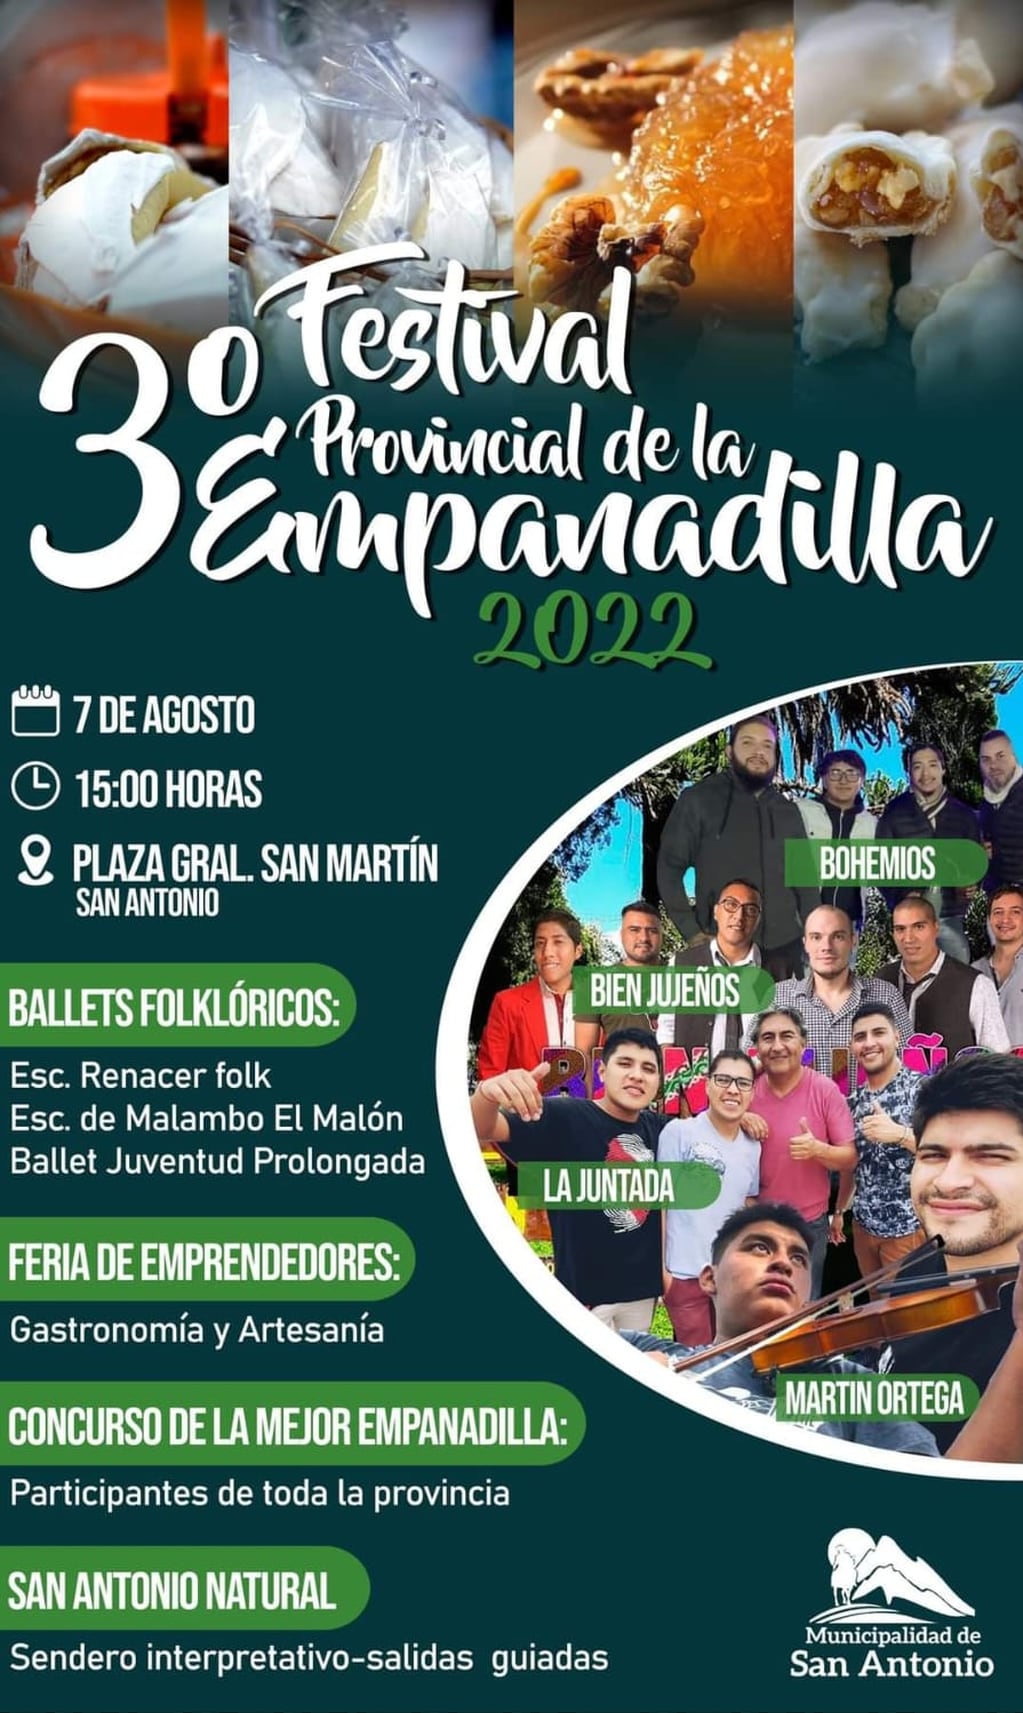 Folleto que anuncia los artistas que animarán el tercer Festival Provincial de la Empanadilla este domingo en San Antonio, Jujuy.